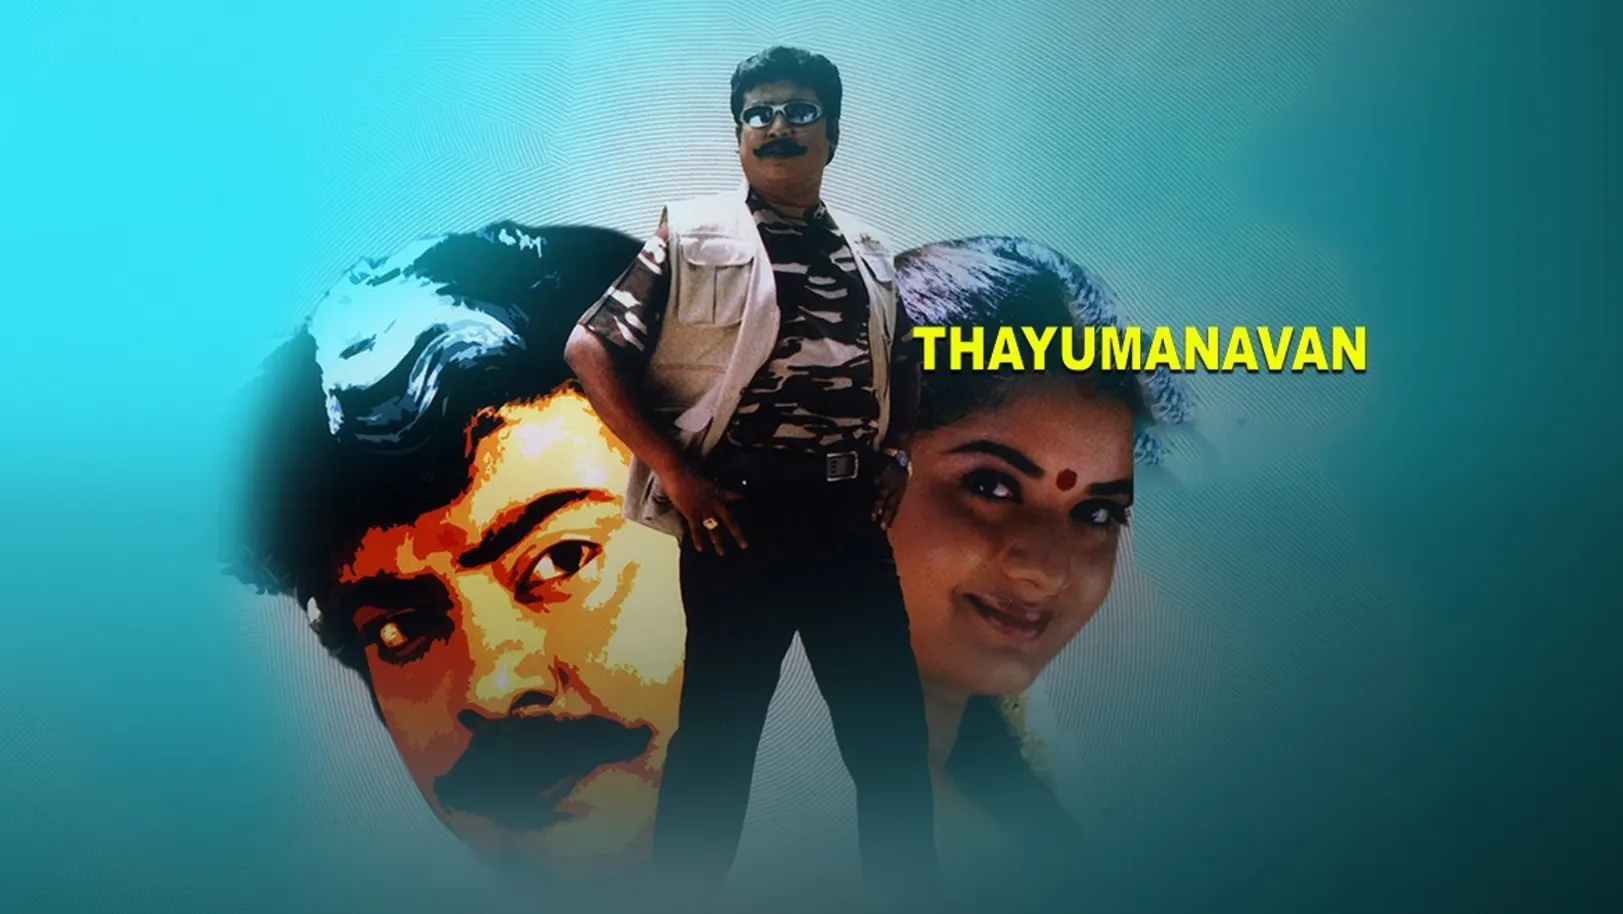 Thayumanavan Movie